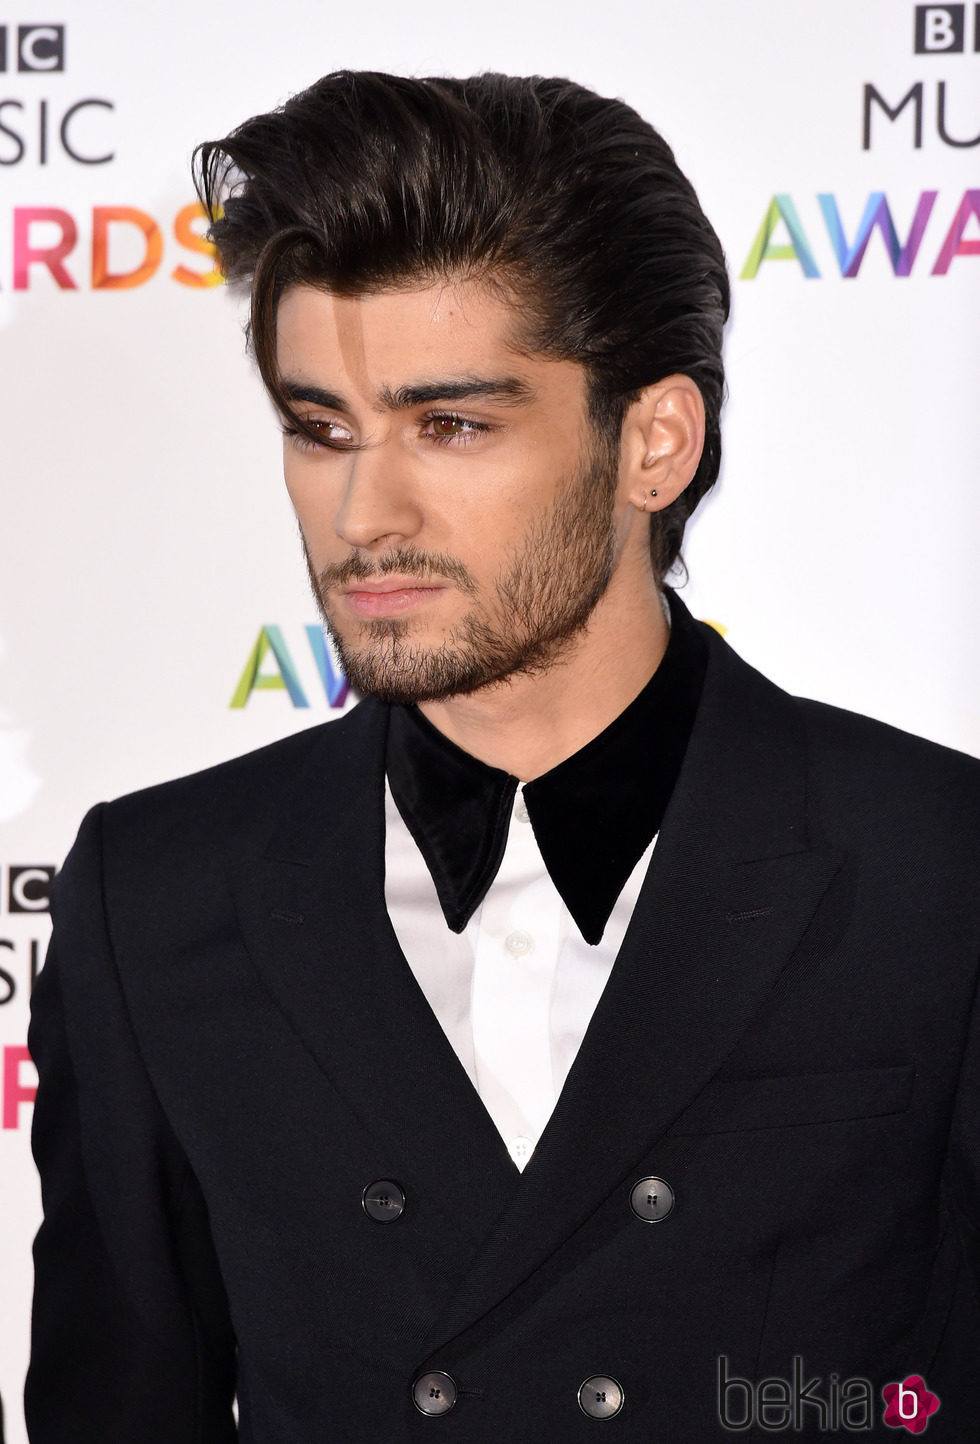 Zayn Malik en los premios BBC Music Awards 2014